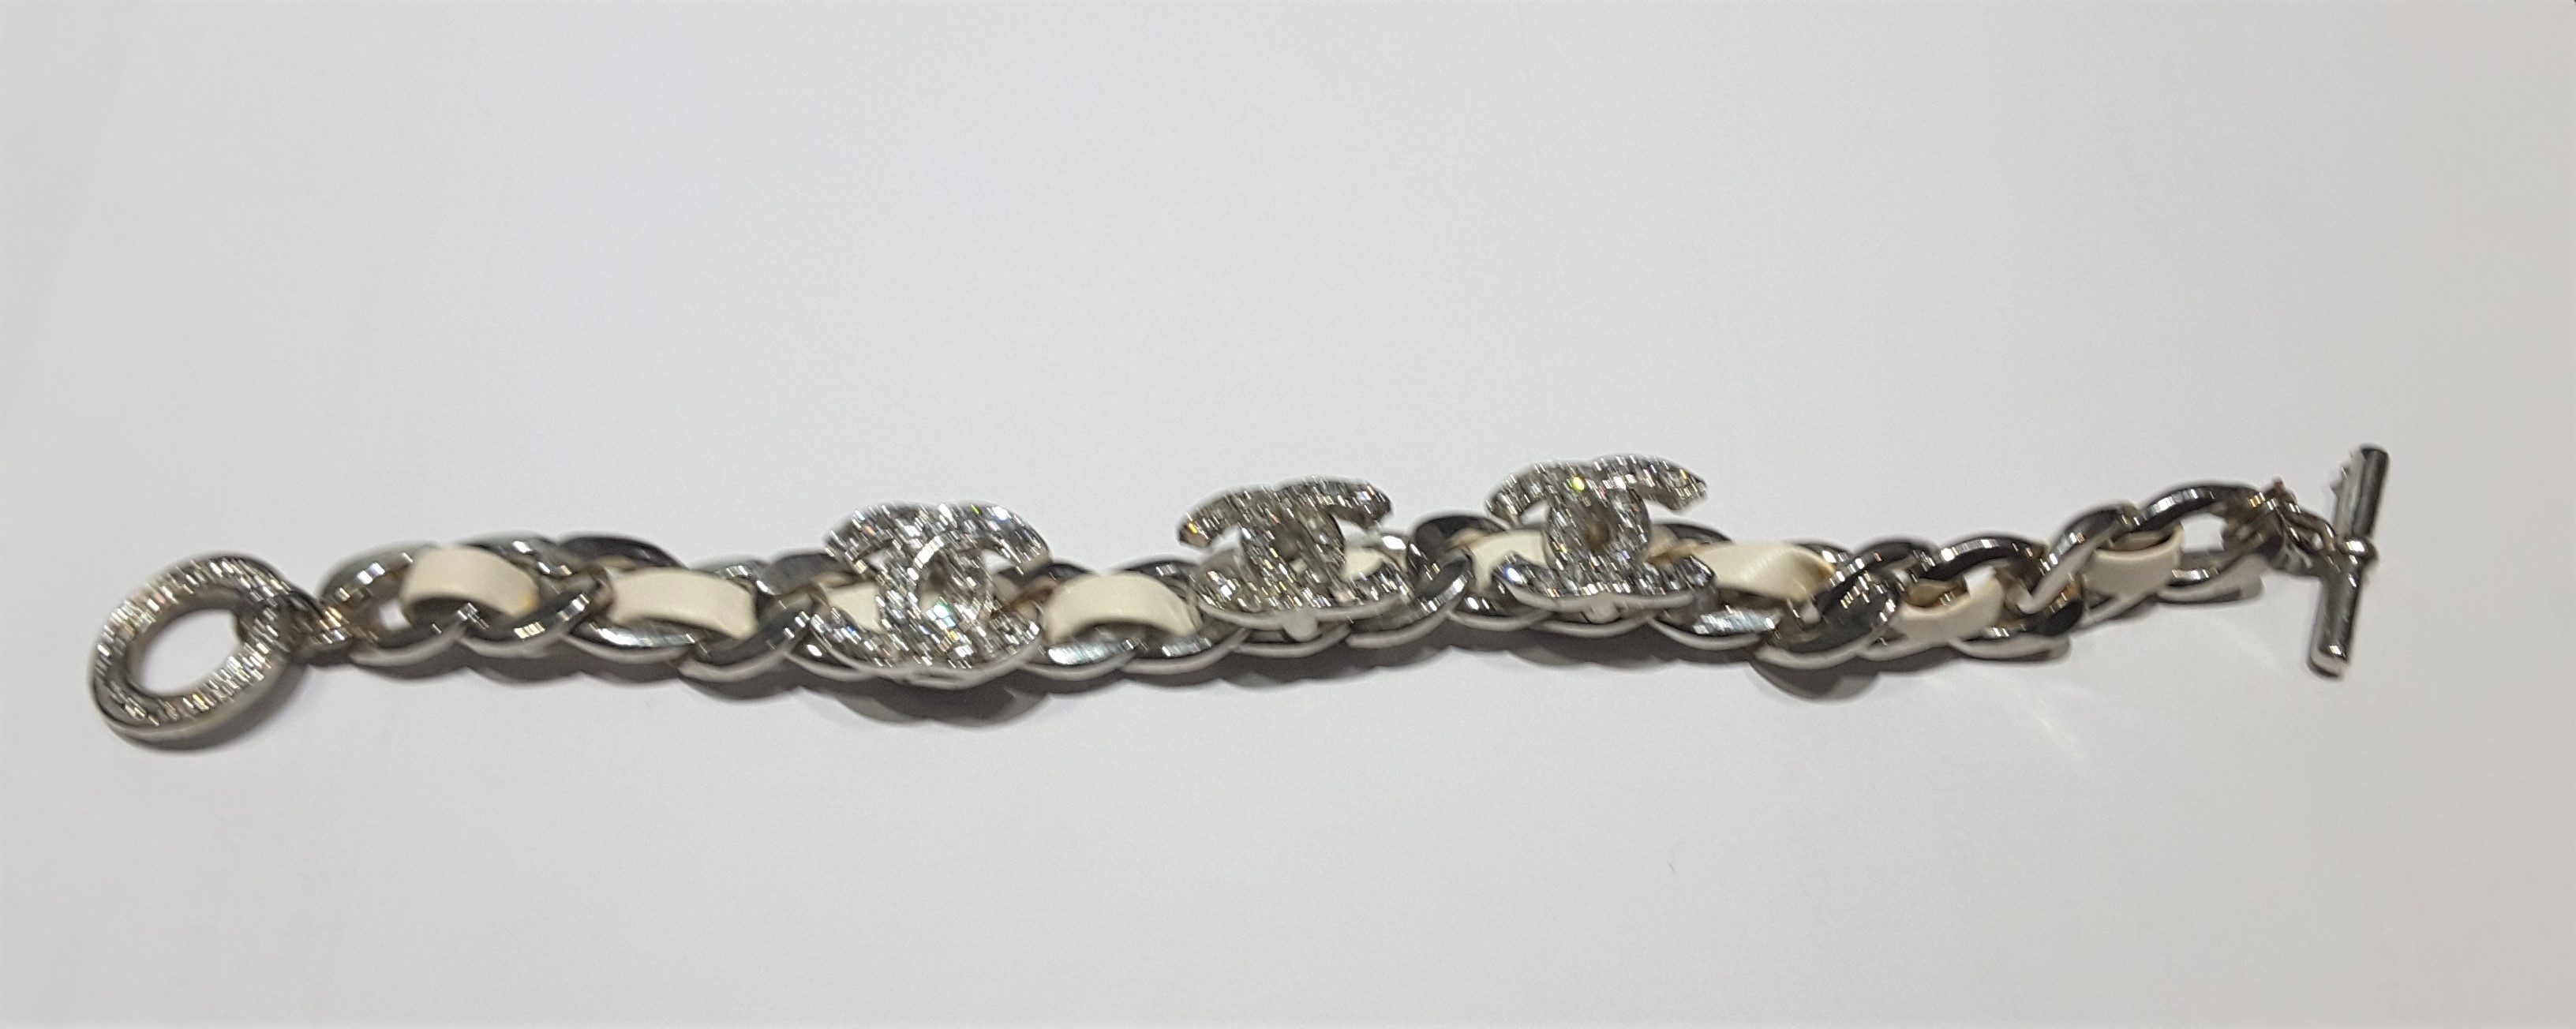 Chanel Bracelet - Image 6 of 7